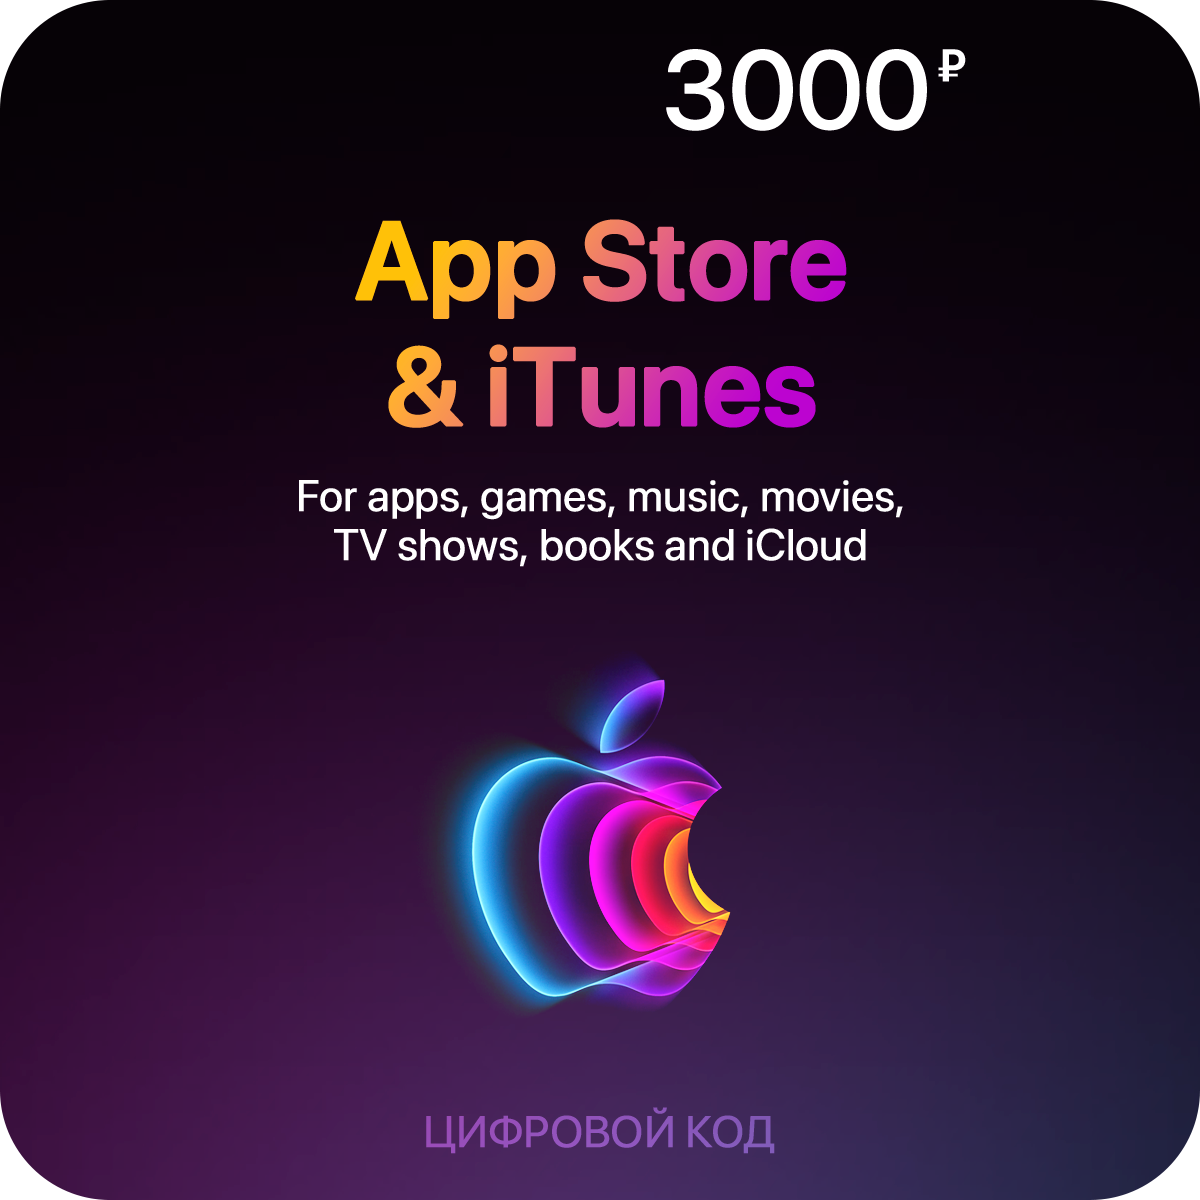 Пополнение счета App Store & iTunes (3000 рублей)